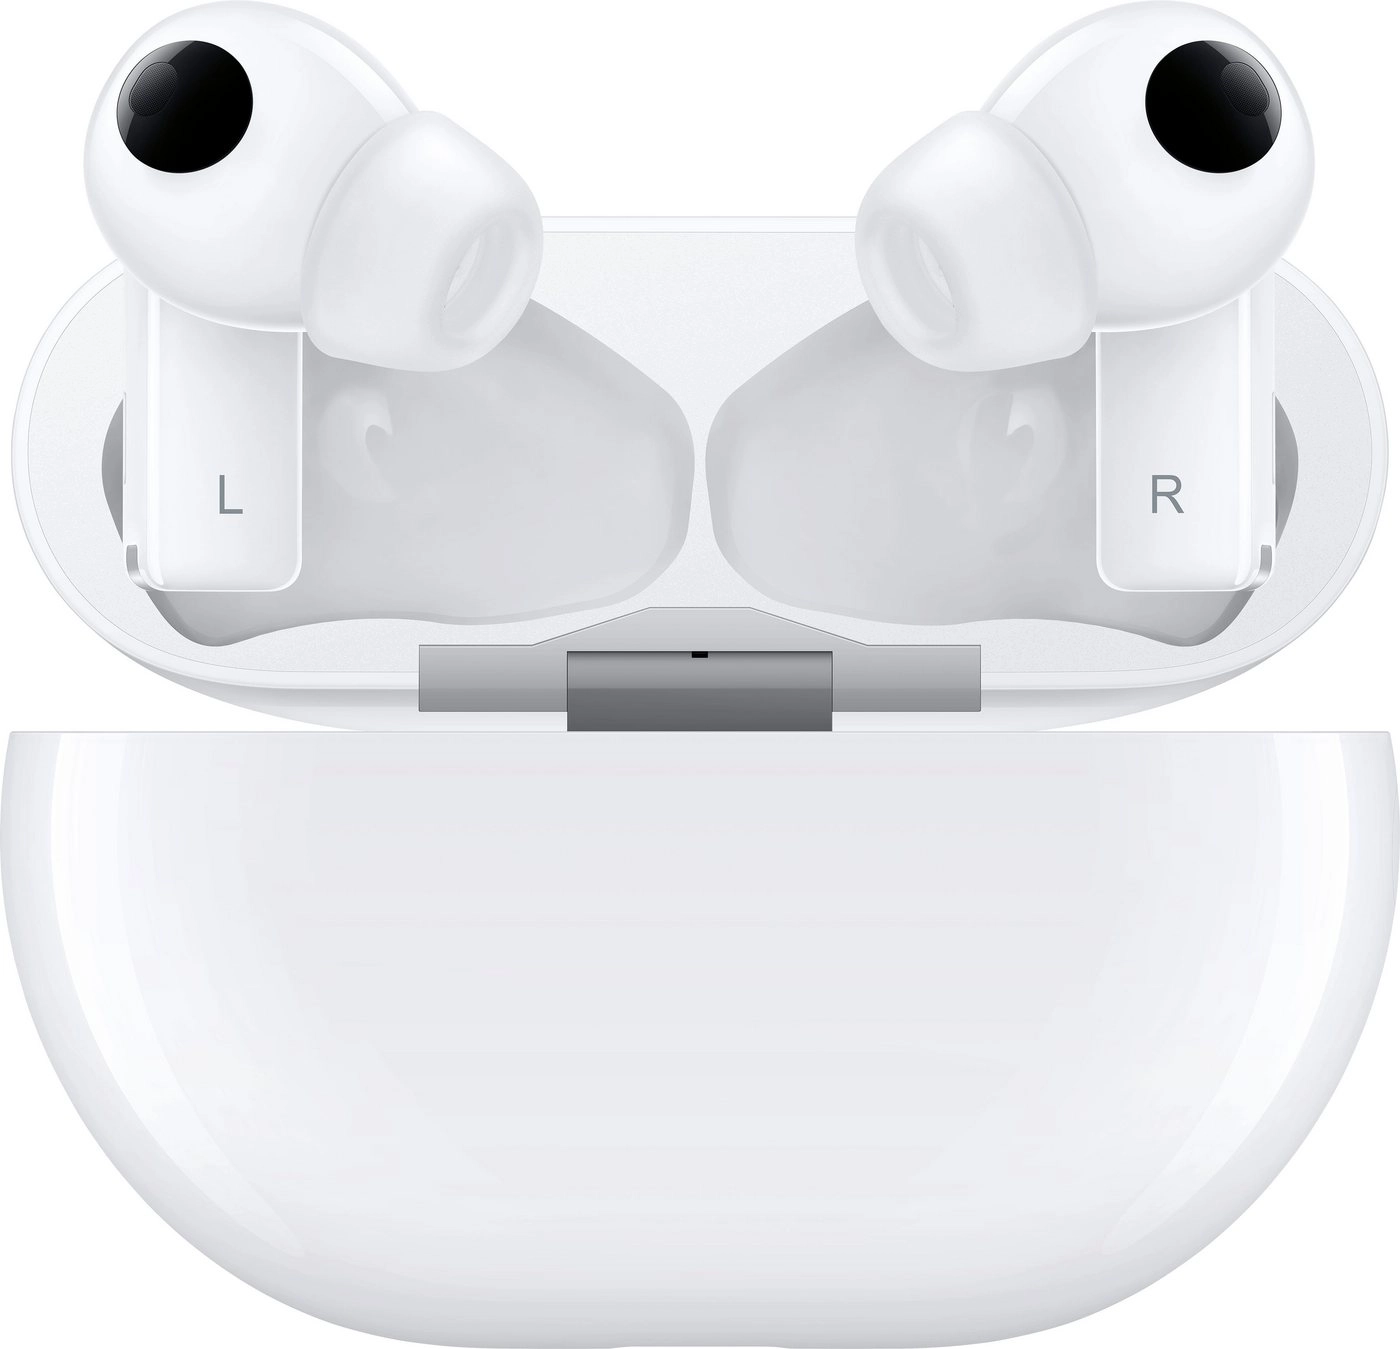 Huawei FreeBuds Pro Weiß  / Ceramic White | True-Wireless In-Ear-Kopfhörer | Dynamic Noise Cancelling | Mikrofon  | Bluetooth 5.2 | 8 Stunden Akku